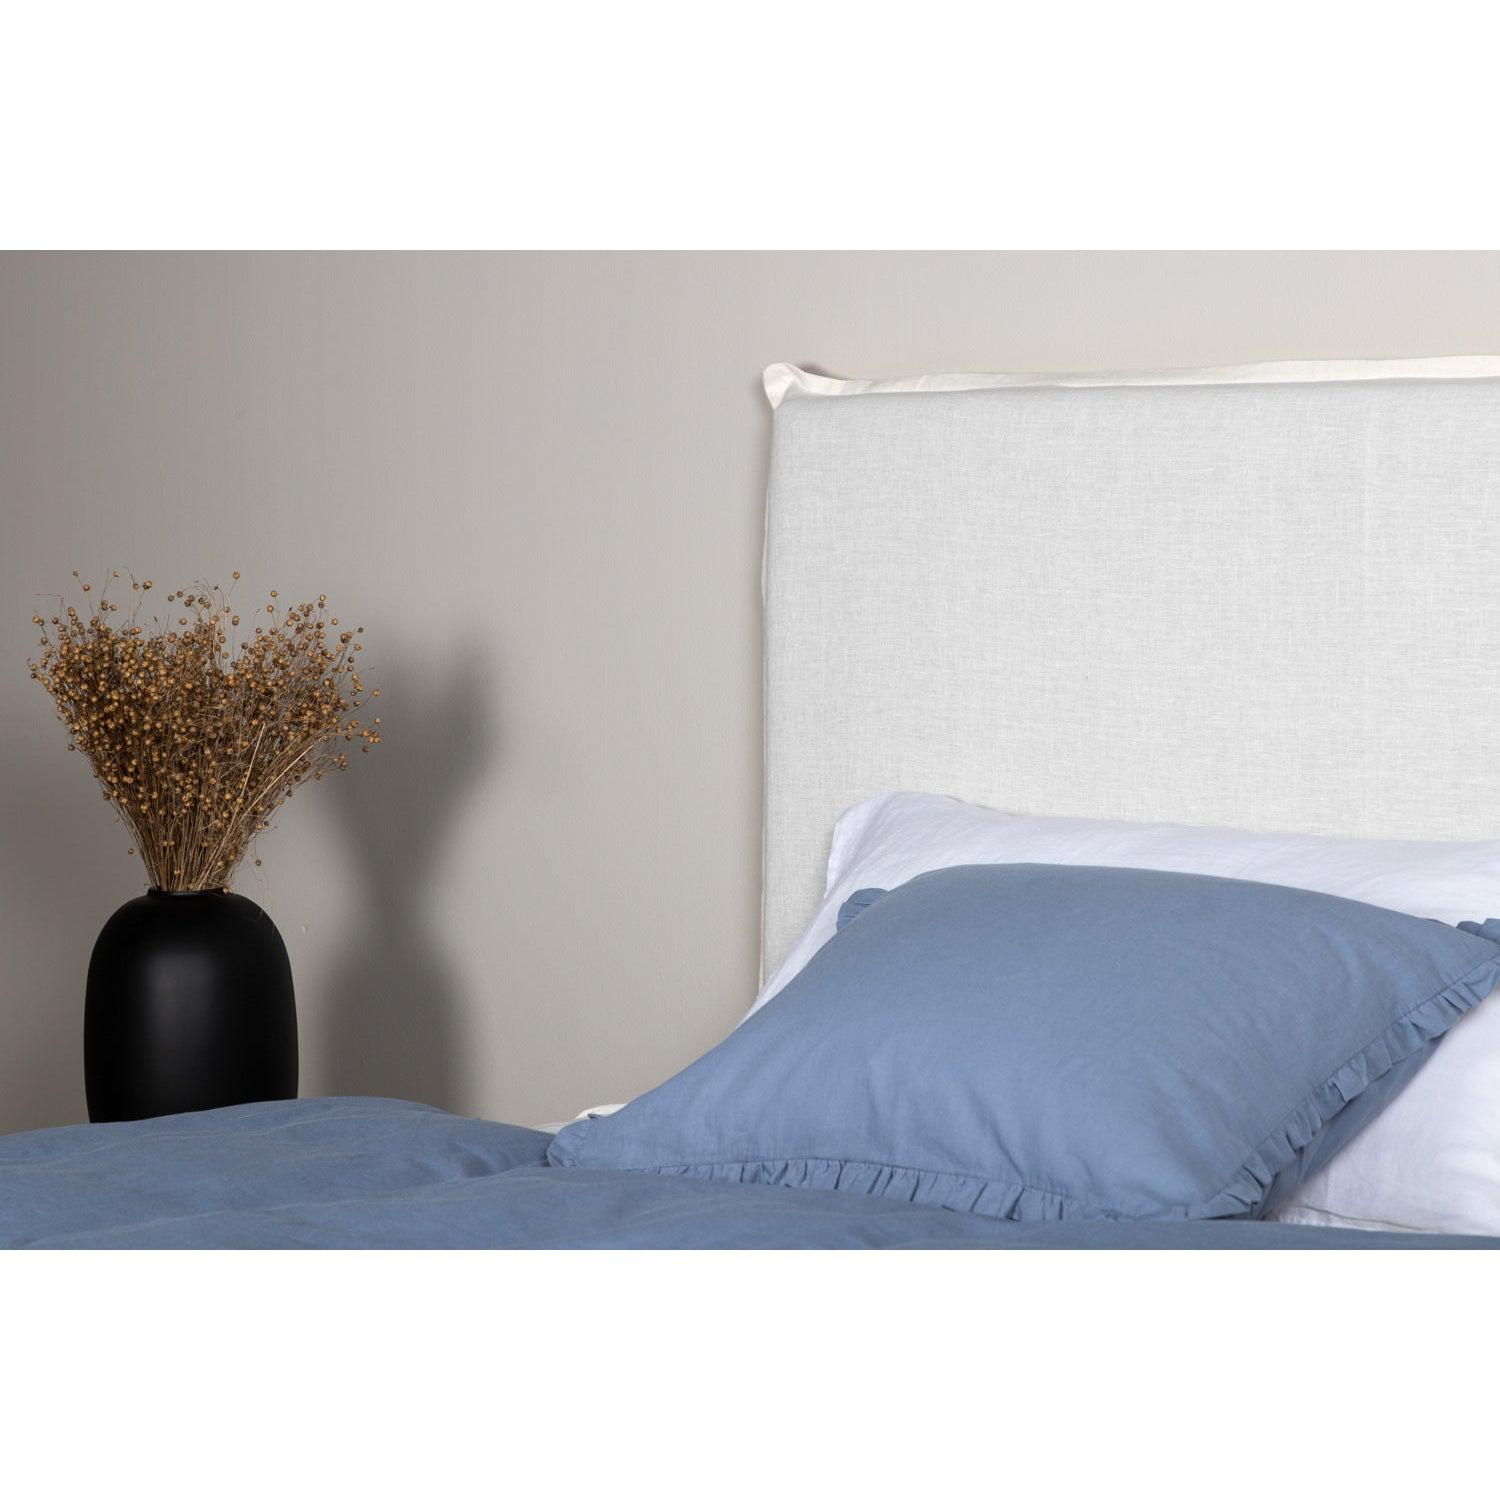 SIGNE Sänggavelöverdrag 180x140 cm - Offwhite-Sänggavelöverdrag-Venture Home-peaceofhome.se